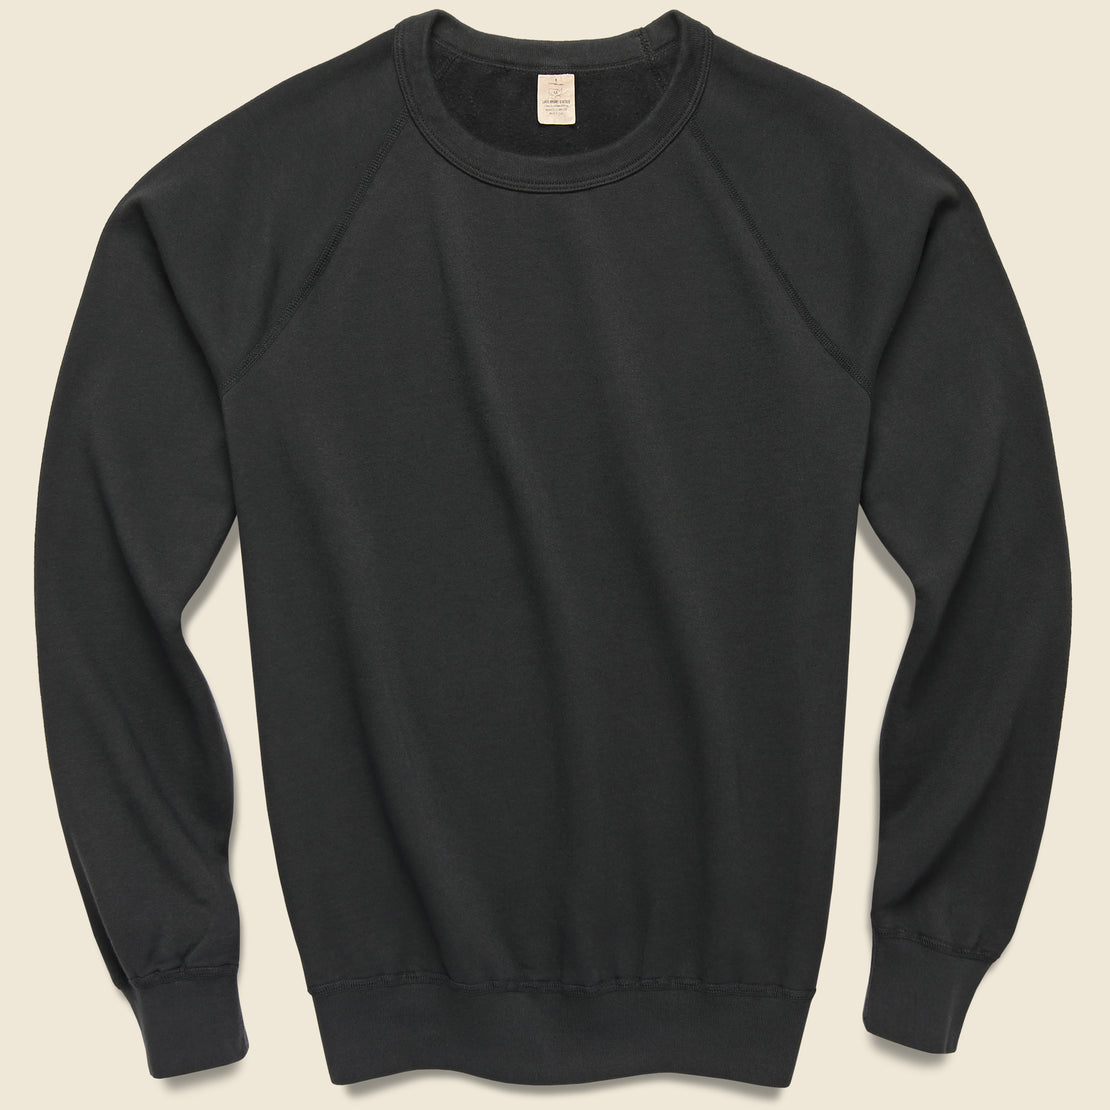 Save Khaki Supima Fleece Sweatshirt - Black